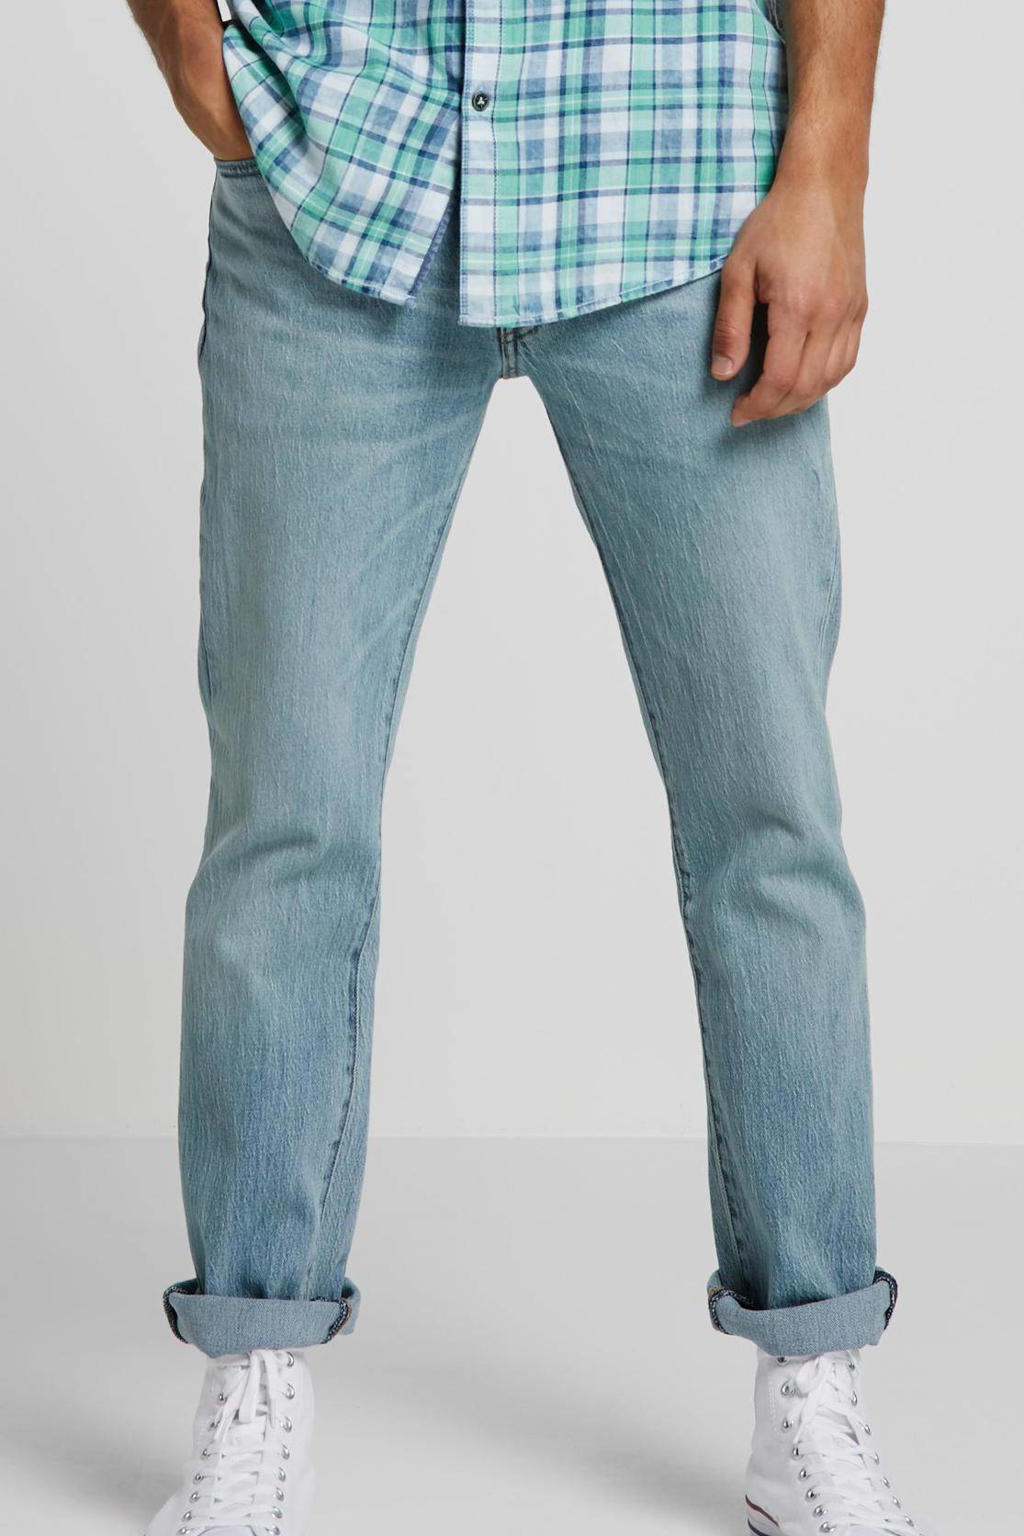 Levi's 511 slim fit jeans fennel subtle